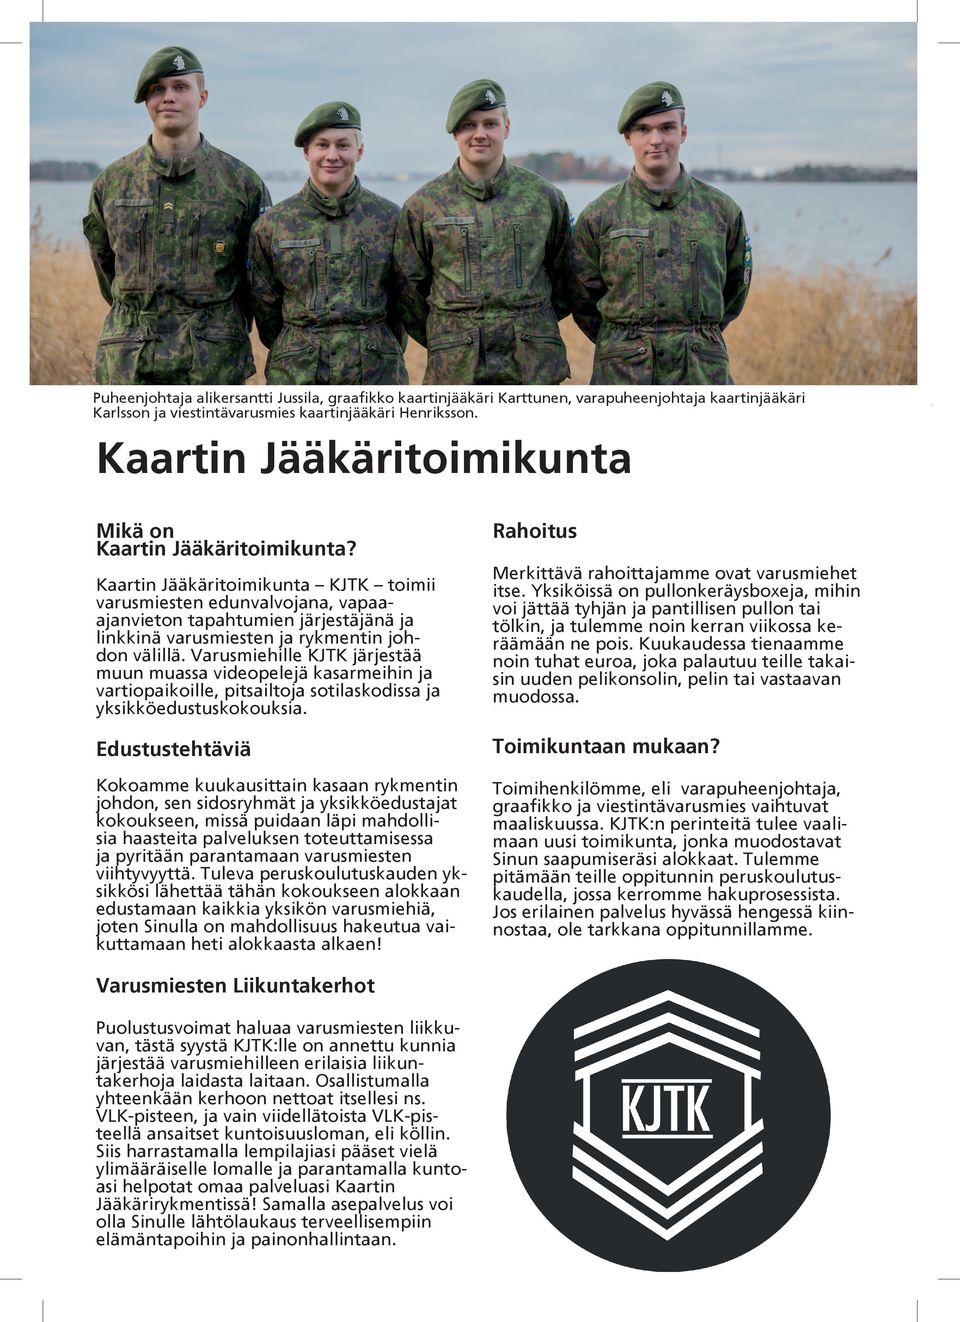 Tässä on Suomen armeijan halutuin yksikkö – lahjakkaimmat varusmiehet valitaan pelintekijöiksi